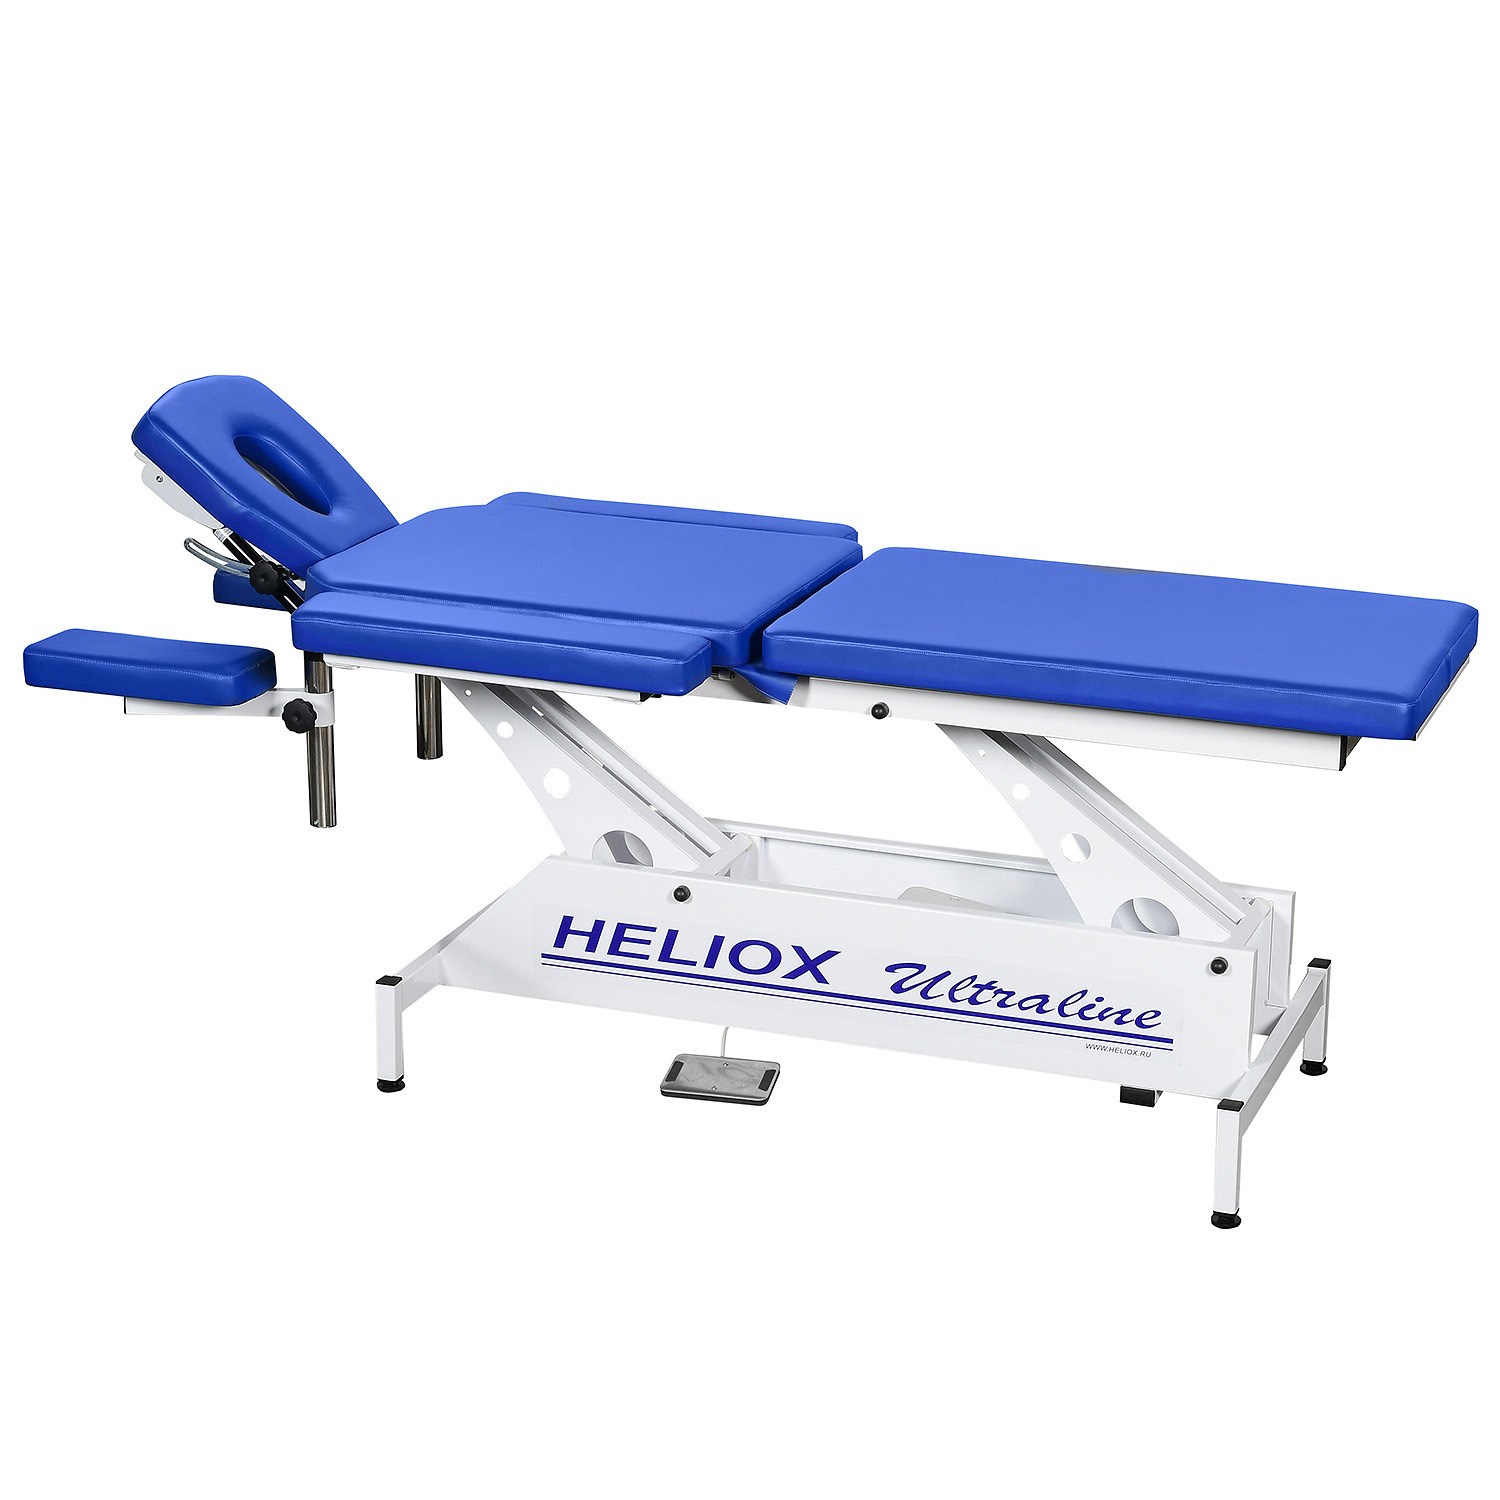 Массажный стол heliox. Heliox f1e3. Массажный стол Гелиокс. Кушетка медицинская Гелиокс. Массажный стол Heliox с электроприводом.